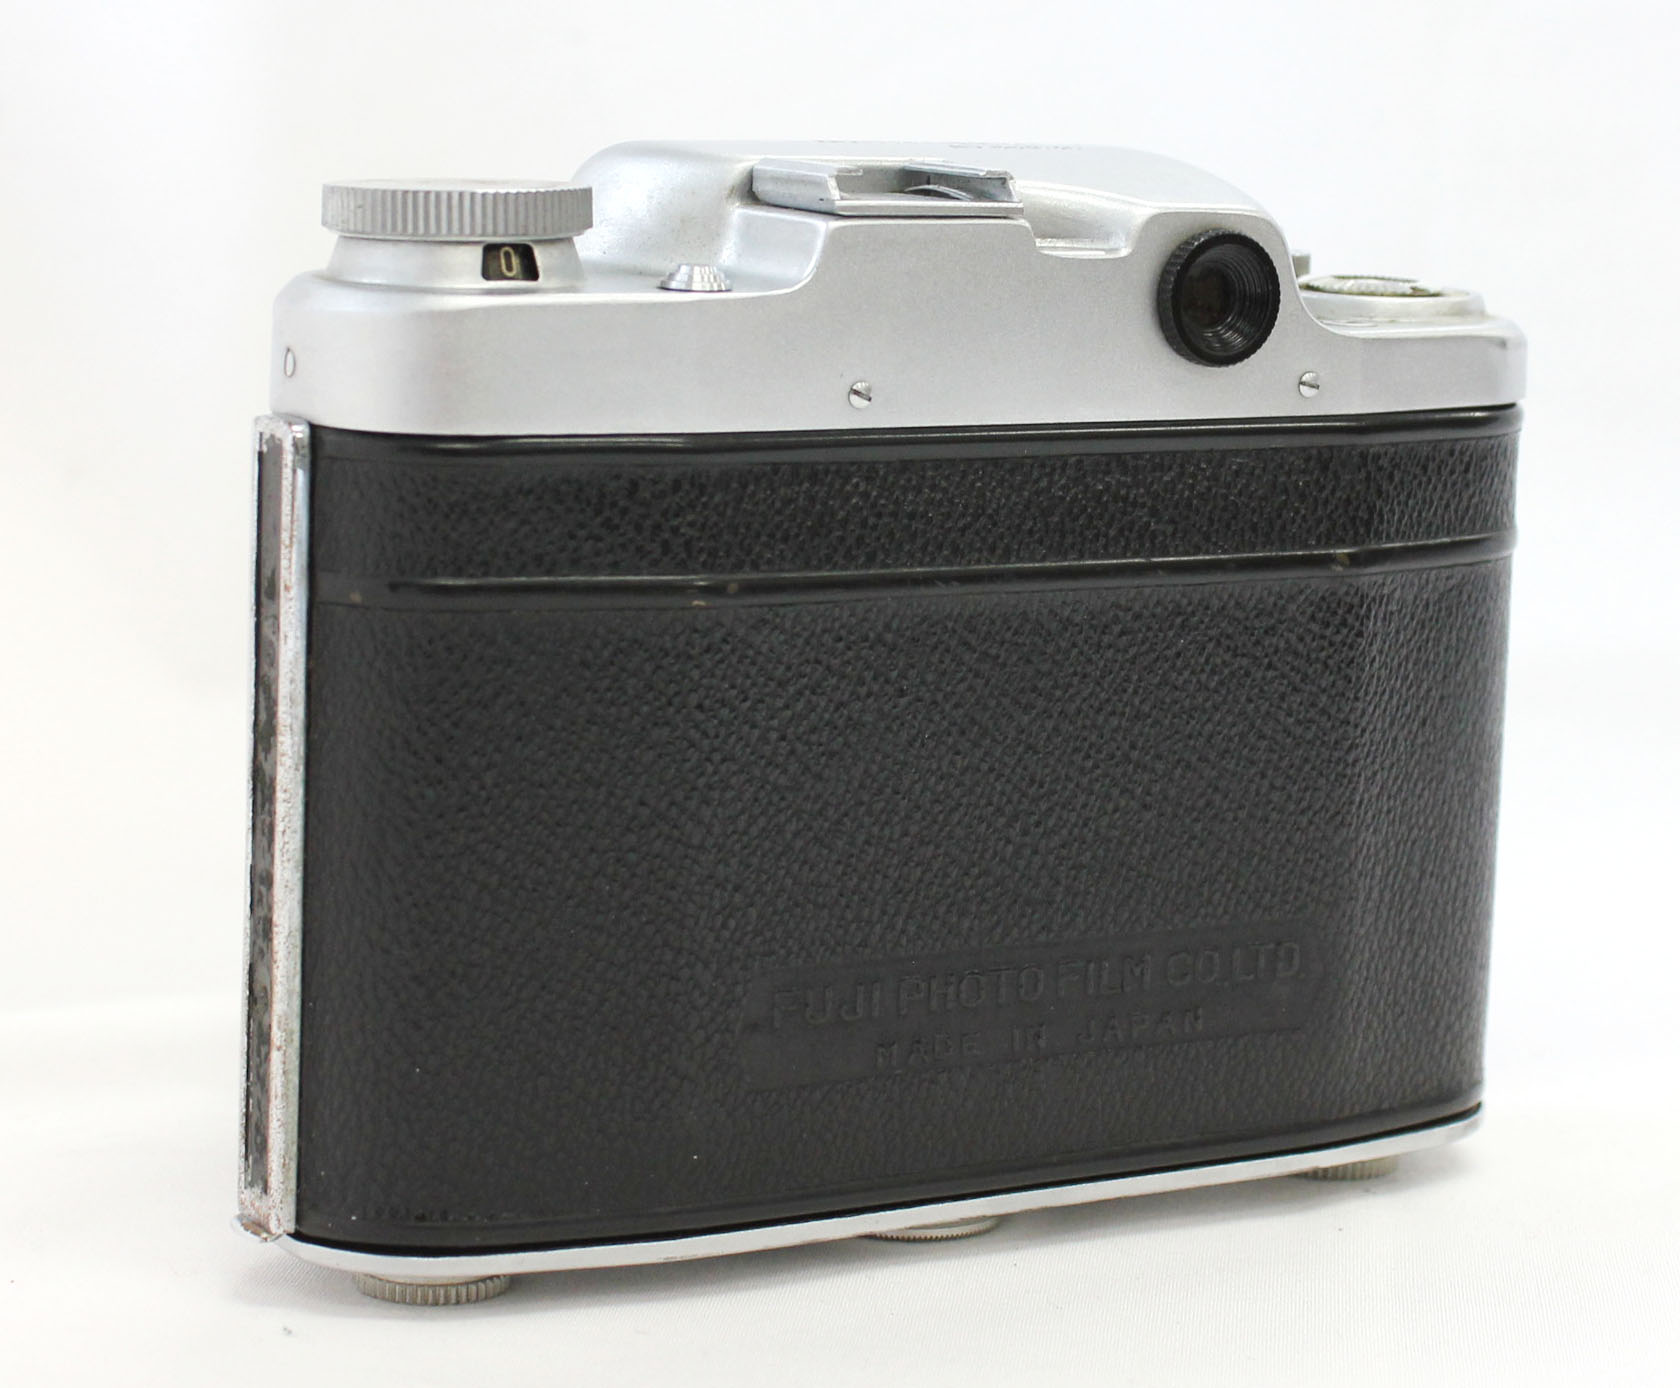 Fuji Super Fujica-6 Six 6x6 Medium Format Film Camera with Fujinar 75mm F/3.5 from Japan Photo 4